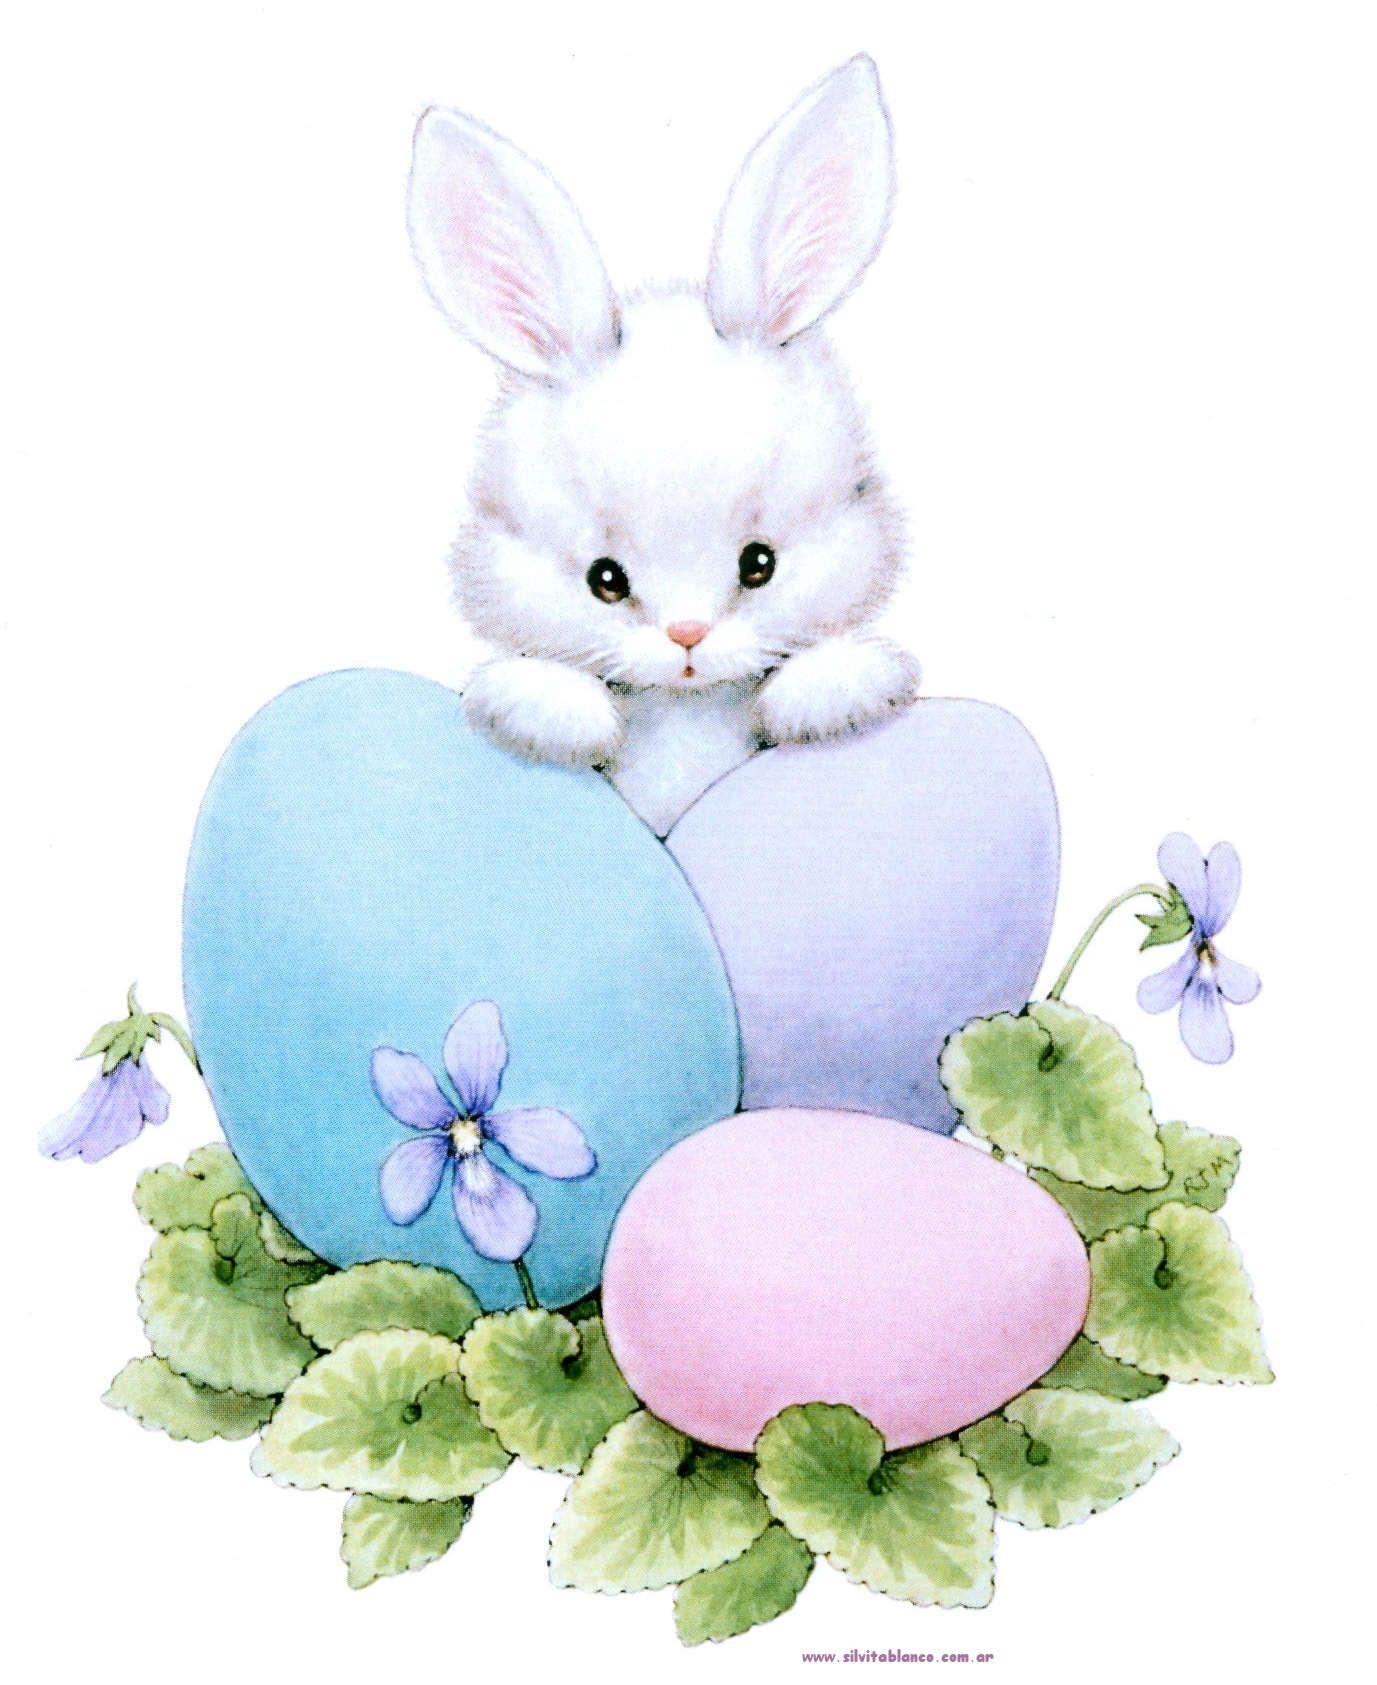 Conejos. Easter illustration, Easter wallpaper, Easter image